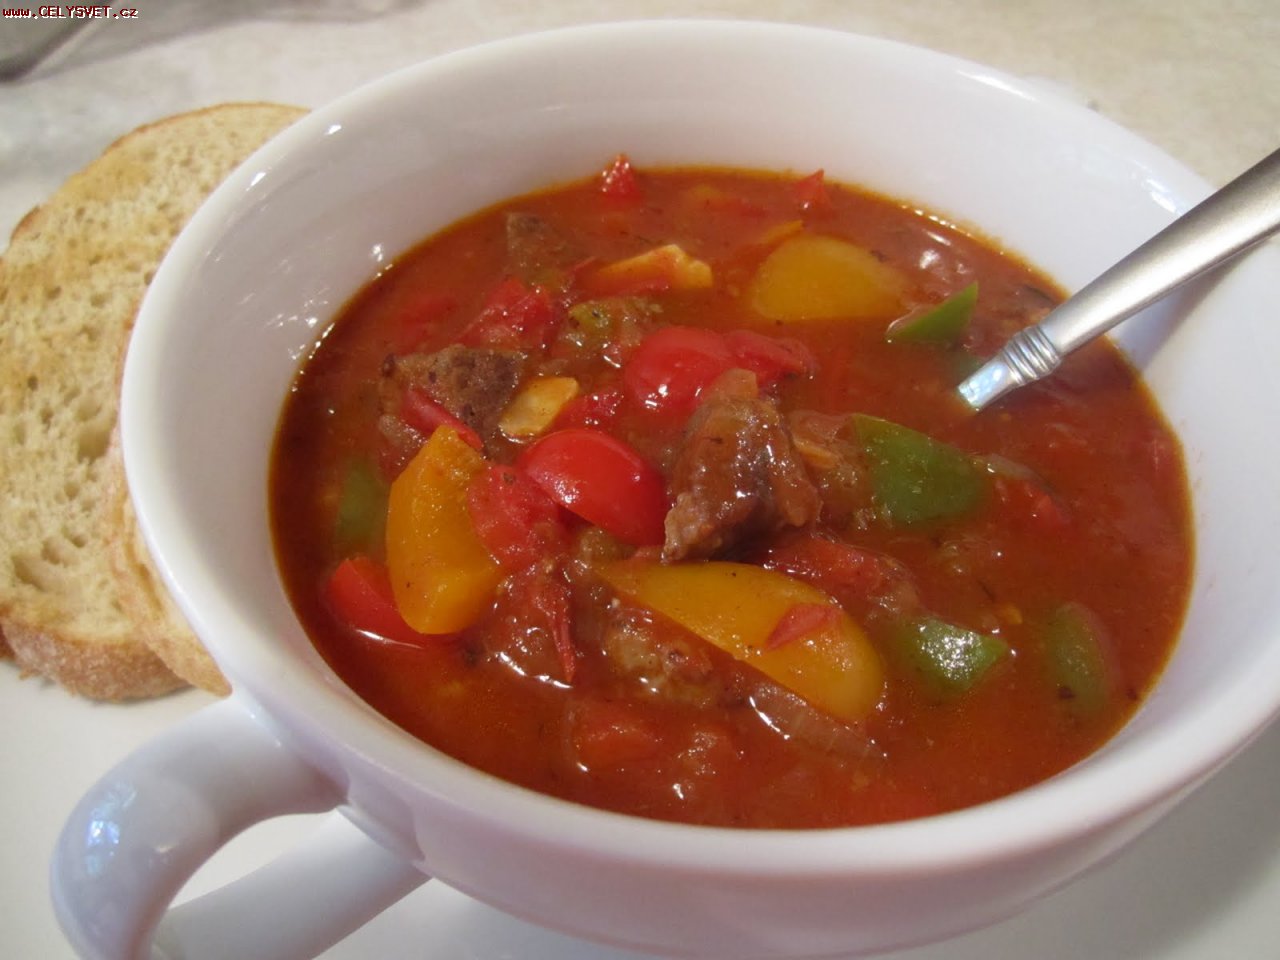 Венгерский суп рецепт с фото